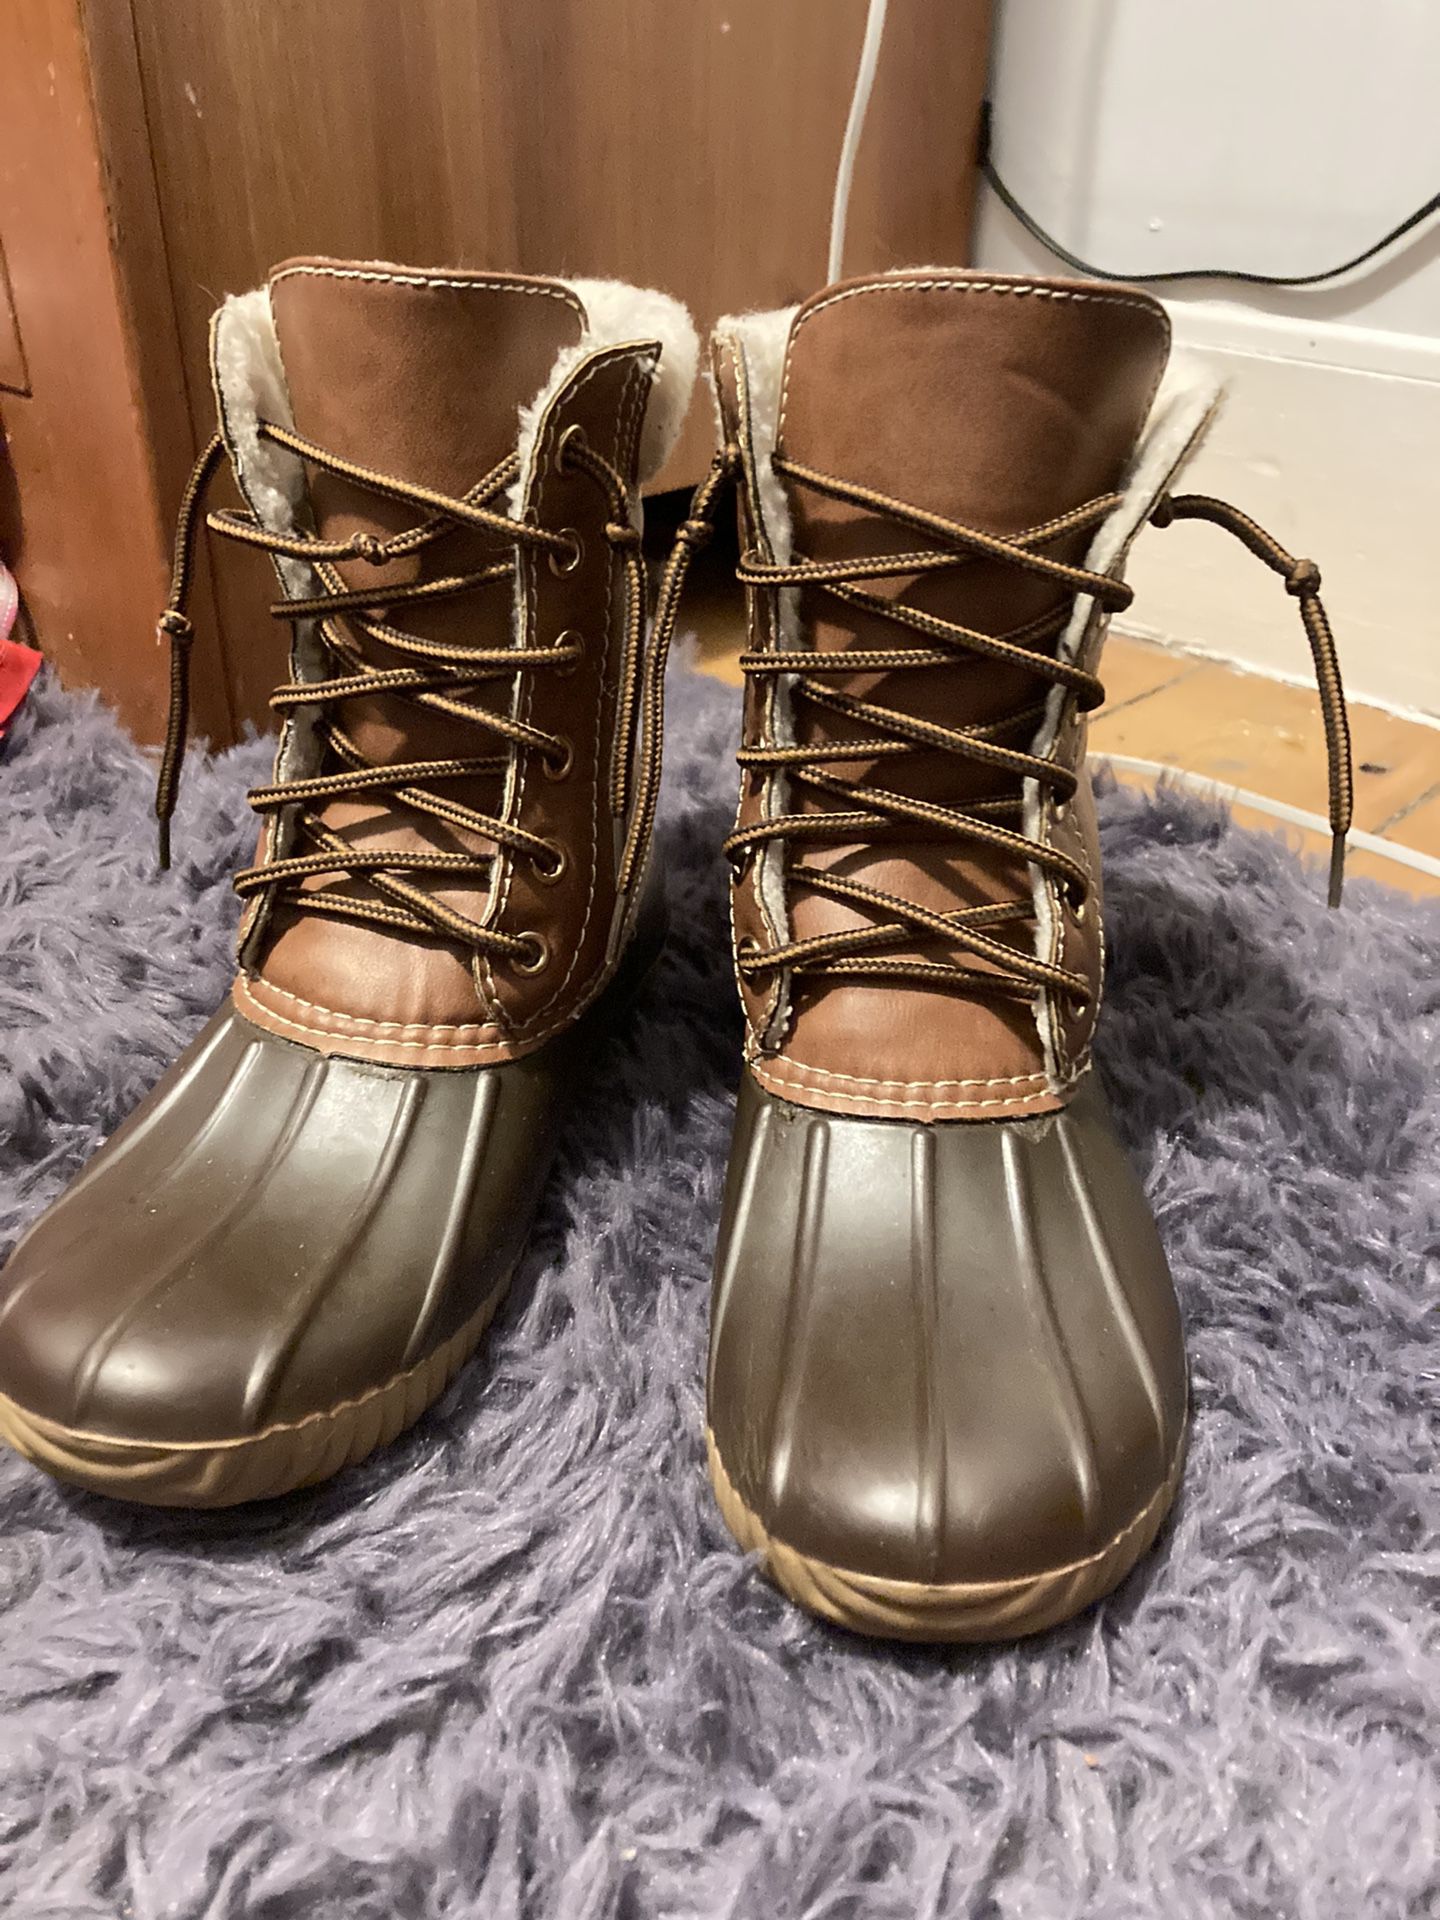 Women’s Size 5.5/6 Fleece lined Duck Boots